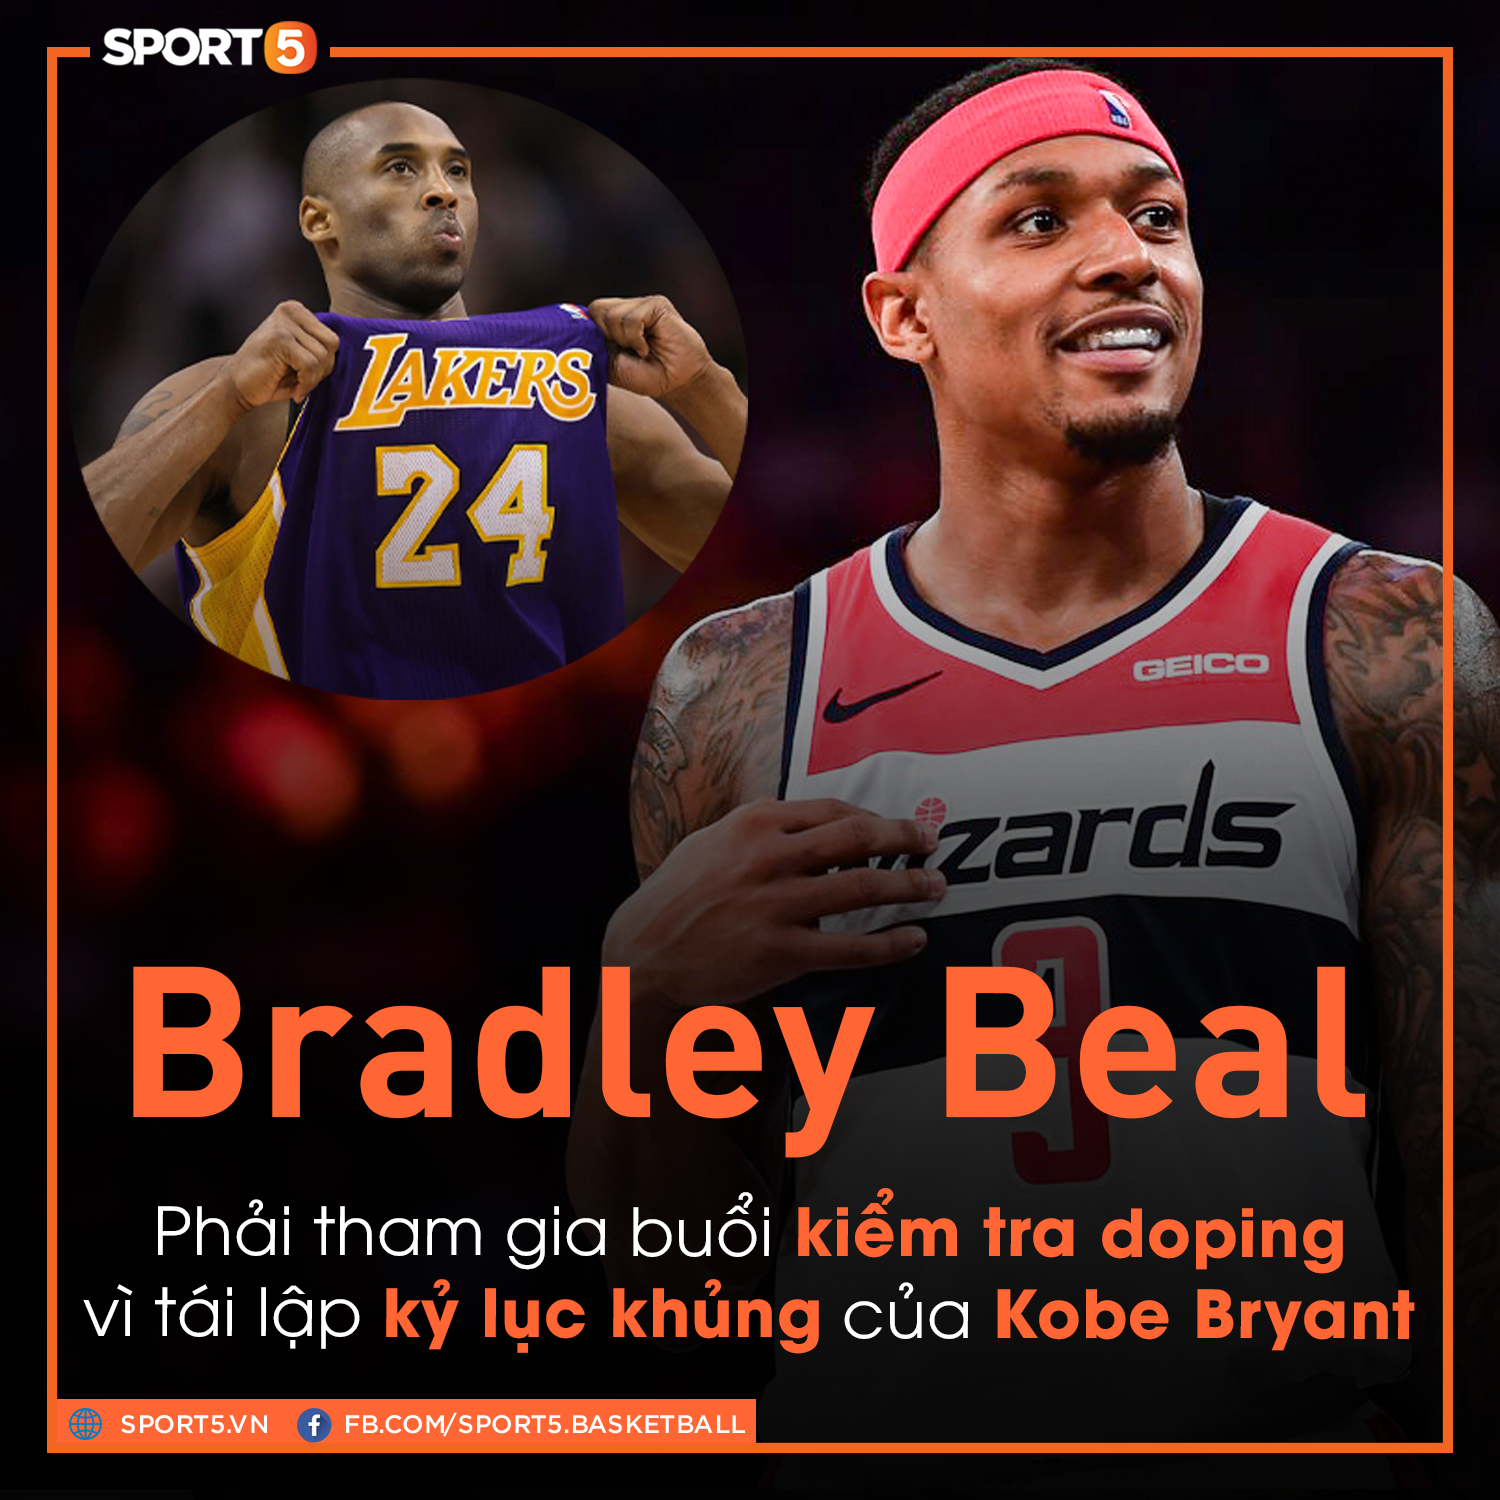 Lập kỷ lục sánh ngang cố huyền thoại Kobe Bryant, sao bóng rổ bị bế đi kiểm tra doping - Ảnh 1.